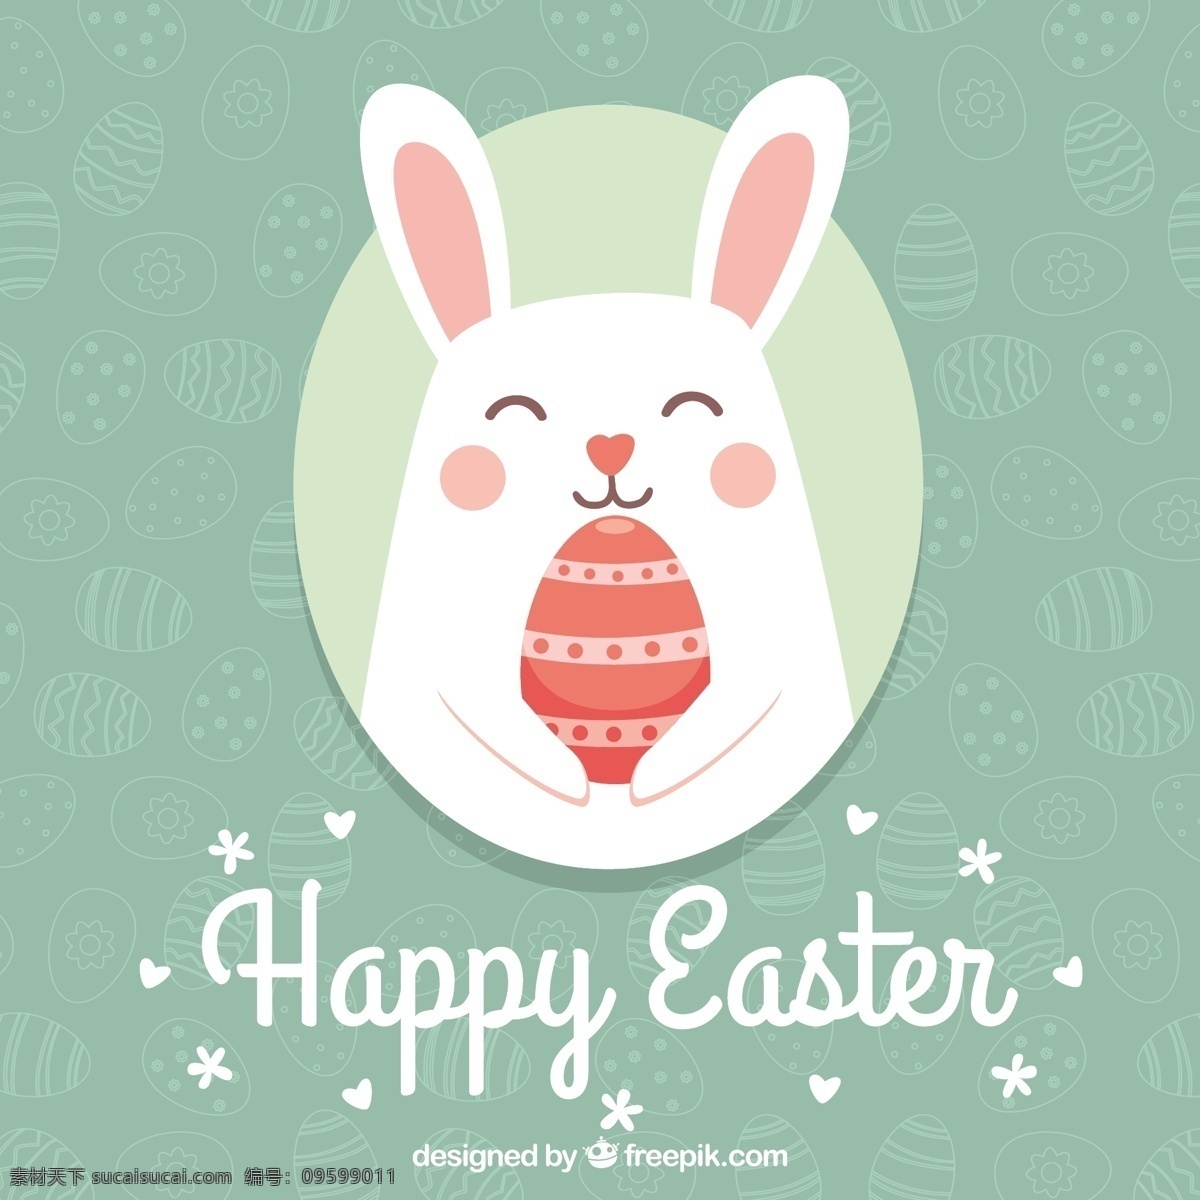 复活节 彩蛋 背景 可爱 兔子 矢量 彩色背景 矢量图 节日 粉红色 鸡蛋 花纹 边框 白色